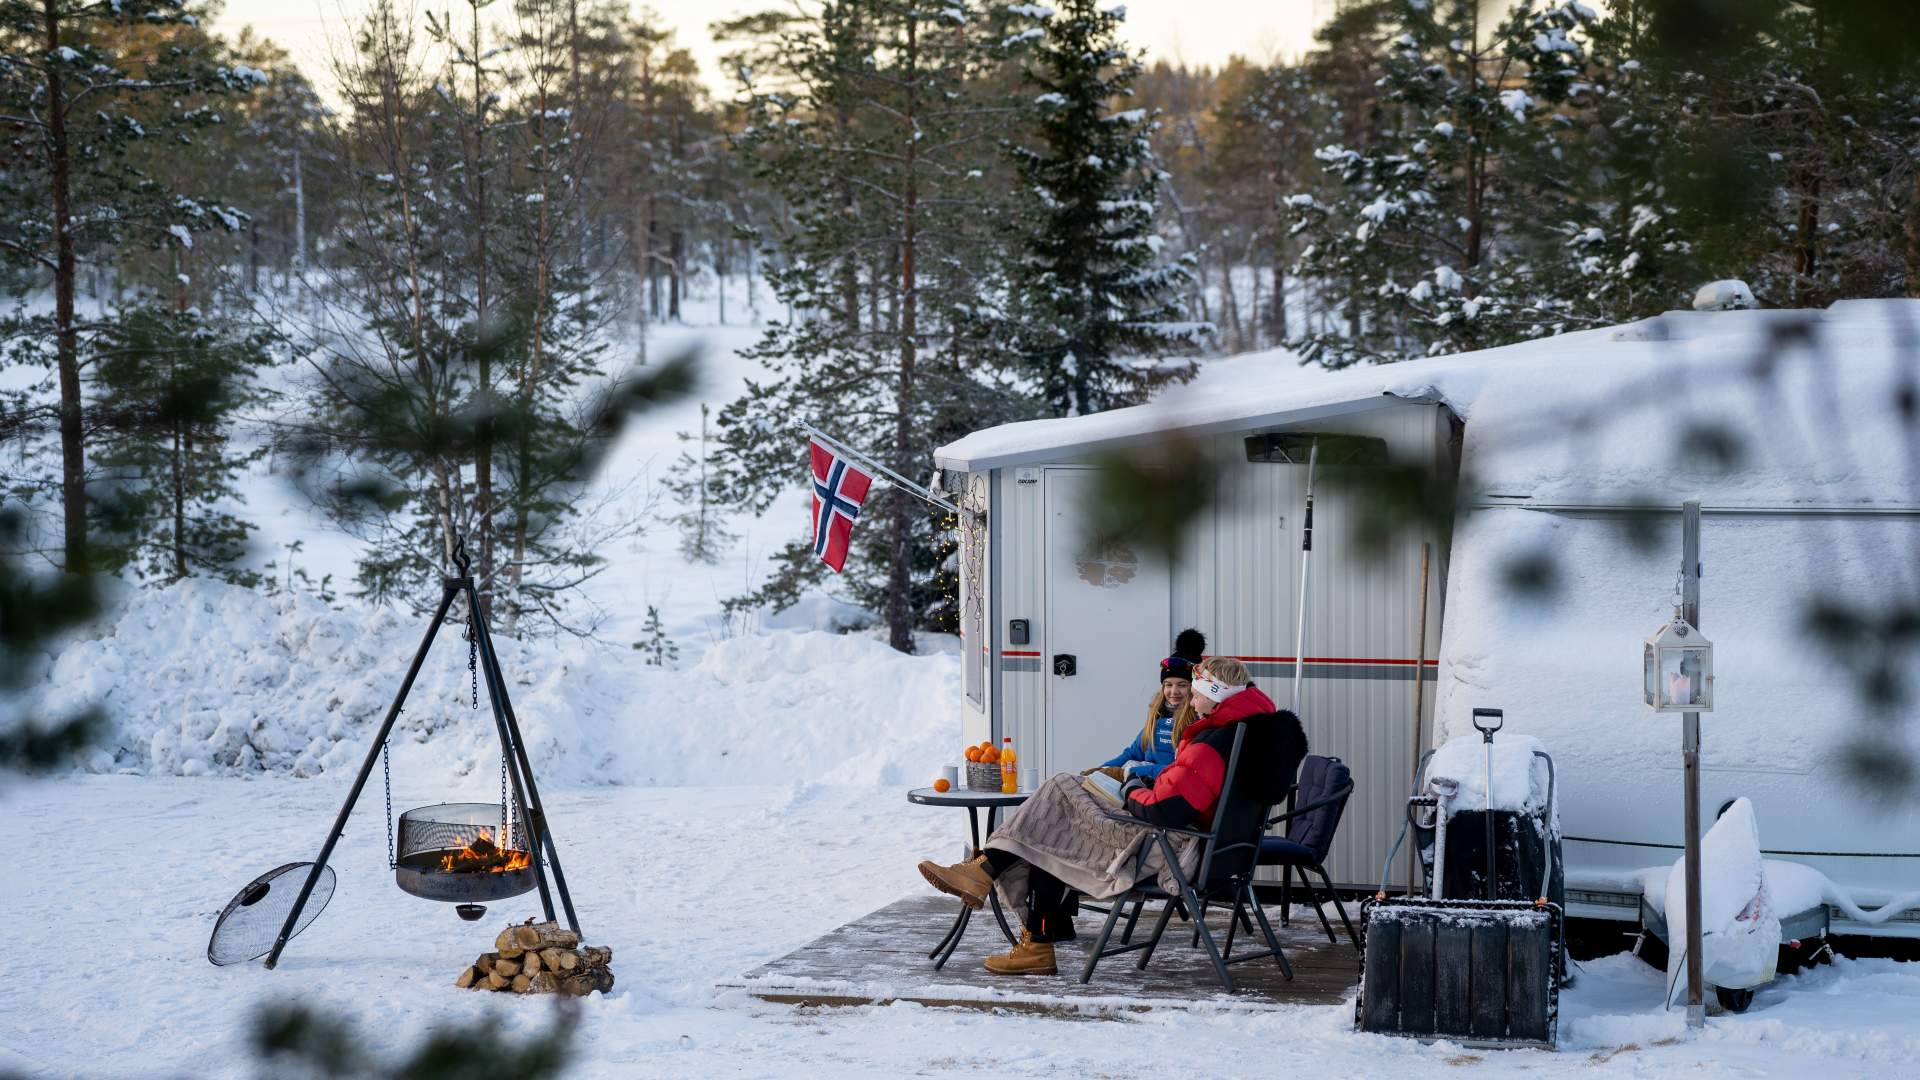 Lygna Camp - The Ideal Winter Camping, Camping, Jaren